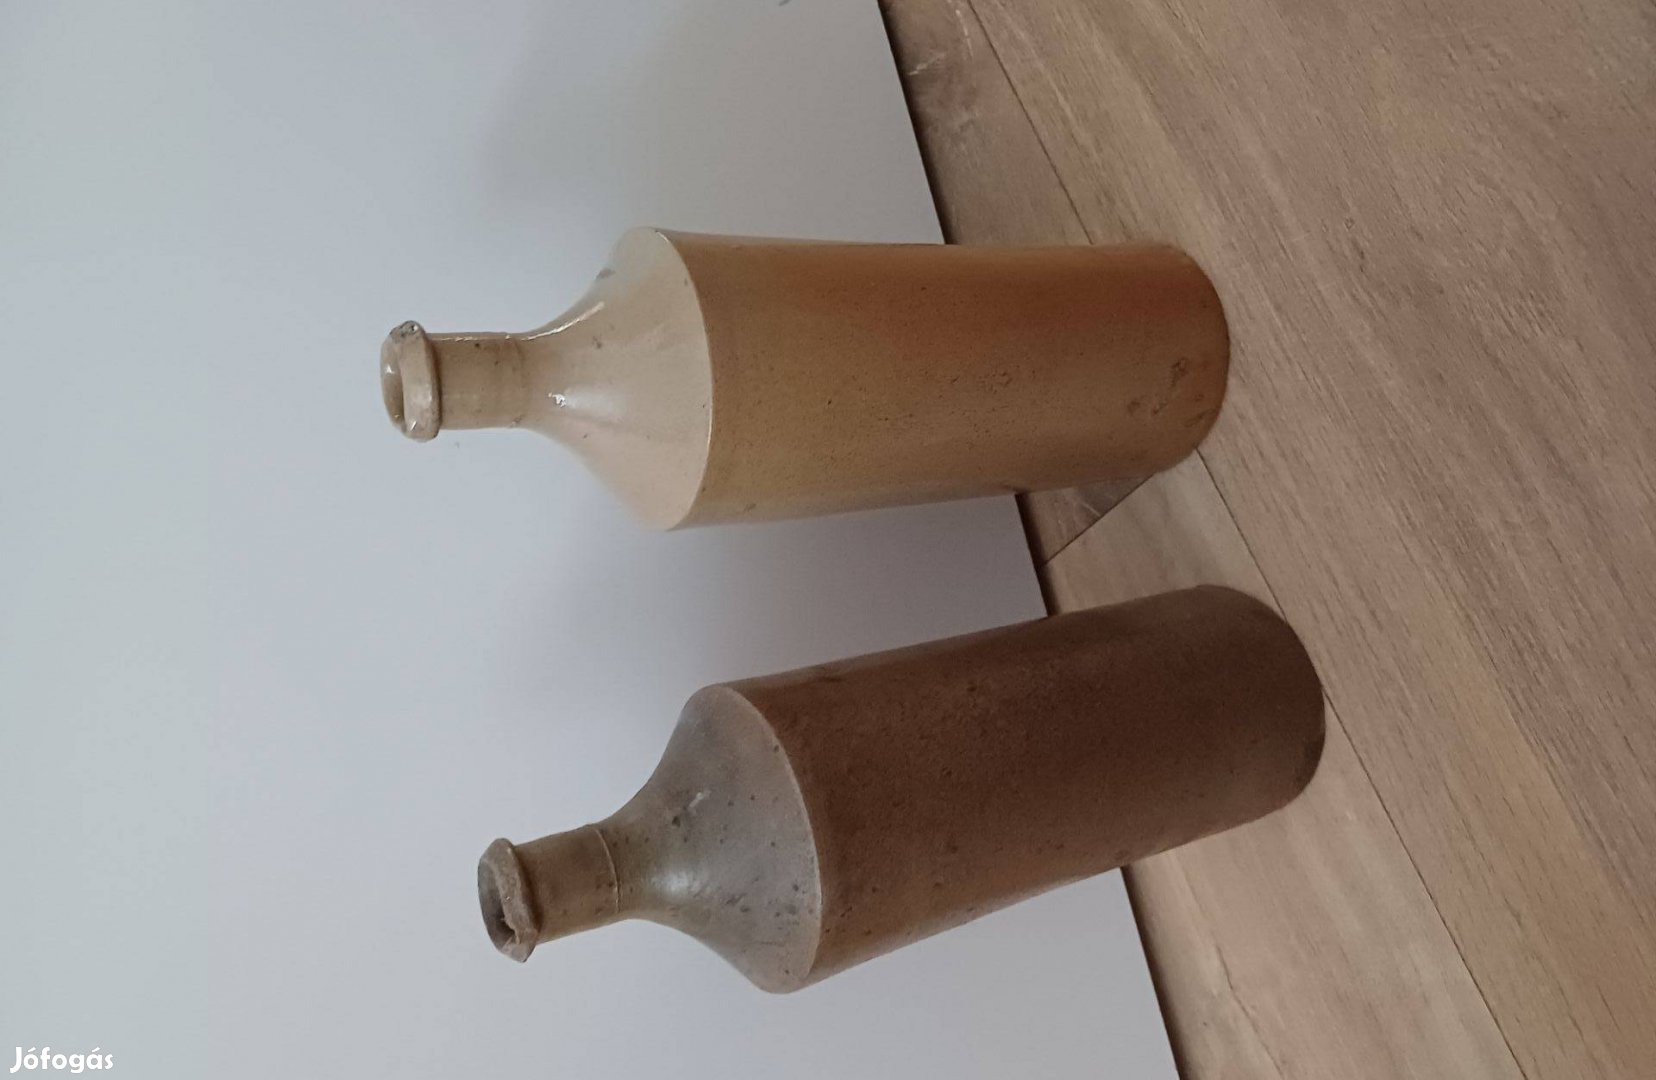 2 db antik petróleum tartó kerámia palack